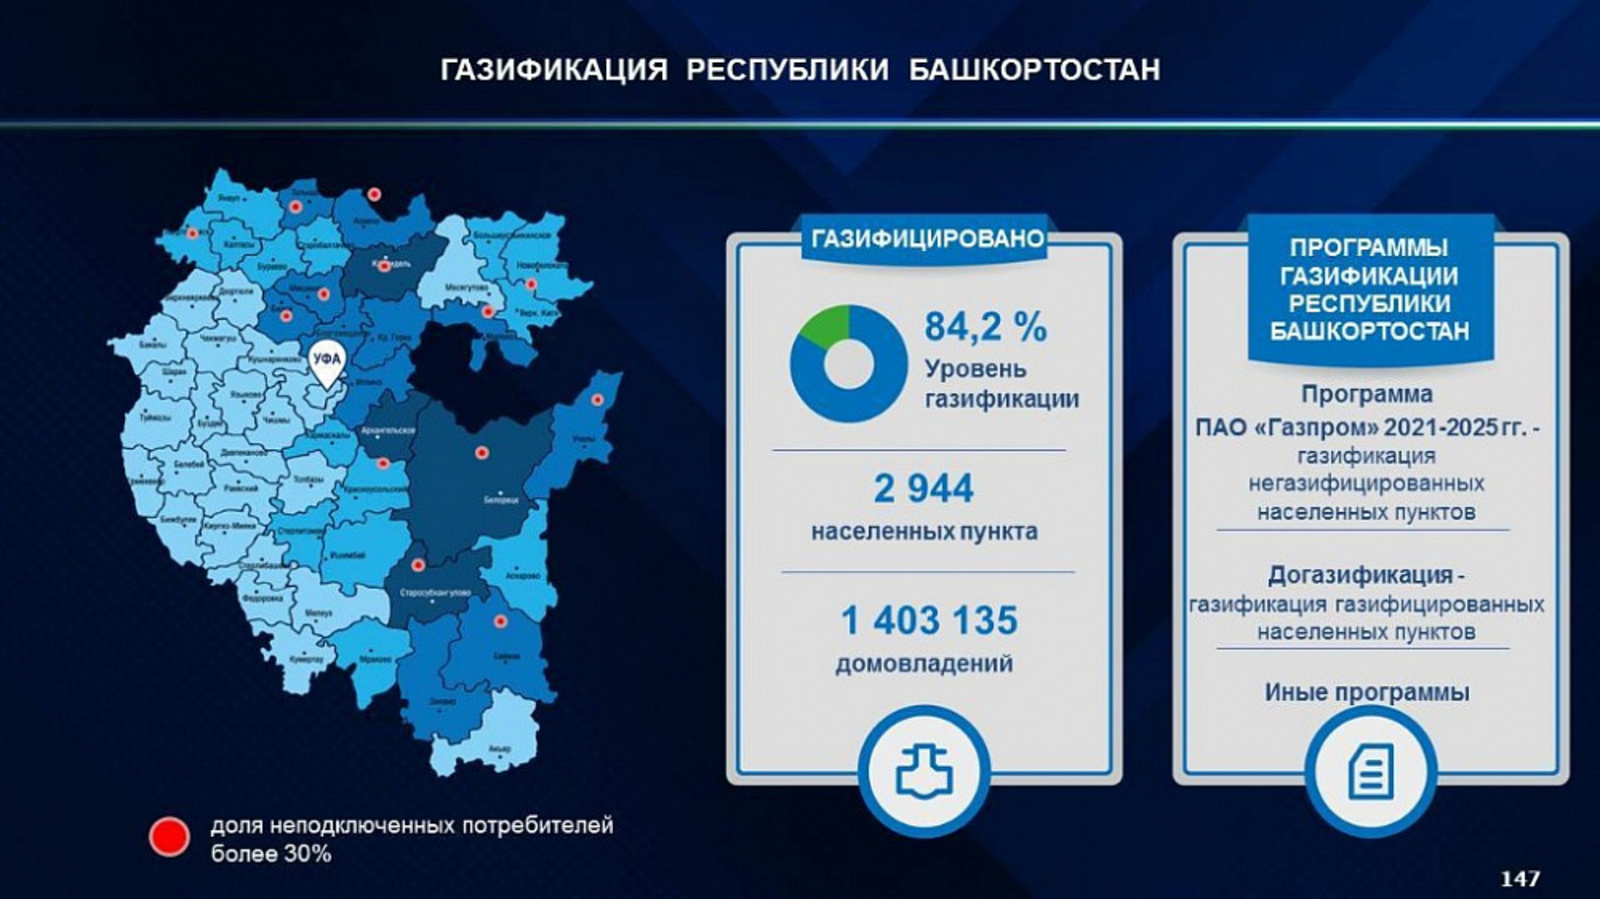 Программой социальной догазификации в Башкортостане могут воспользоваться 64 тысячи домовладений